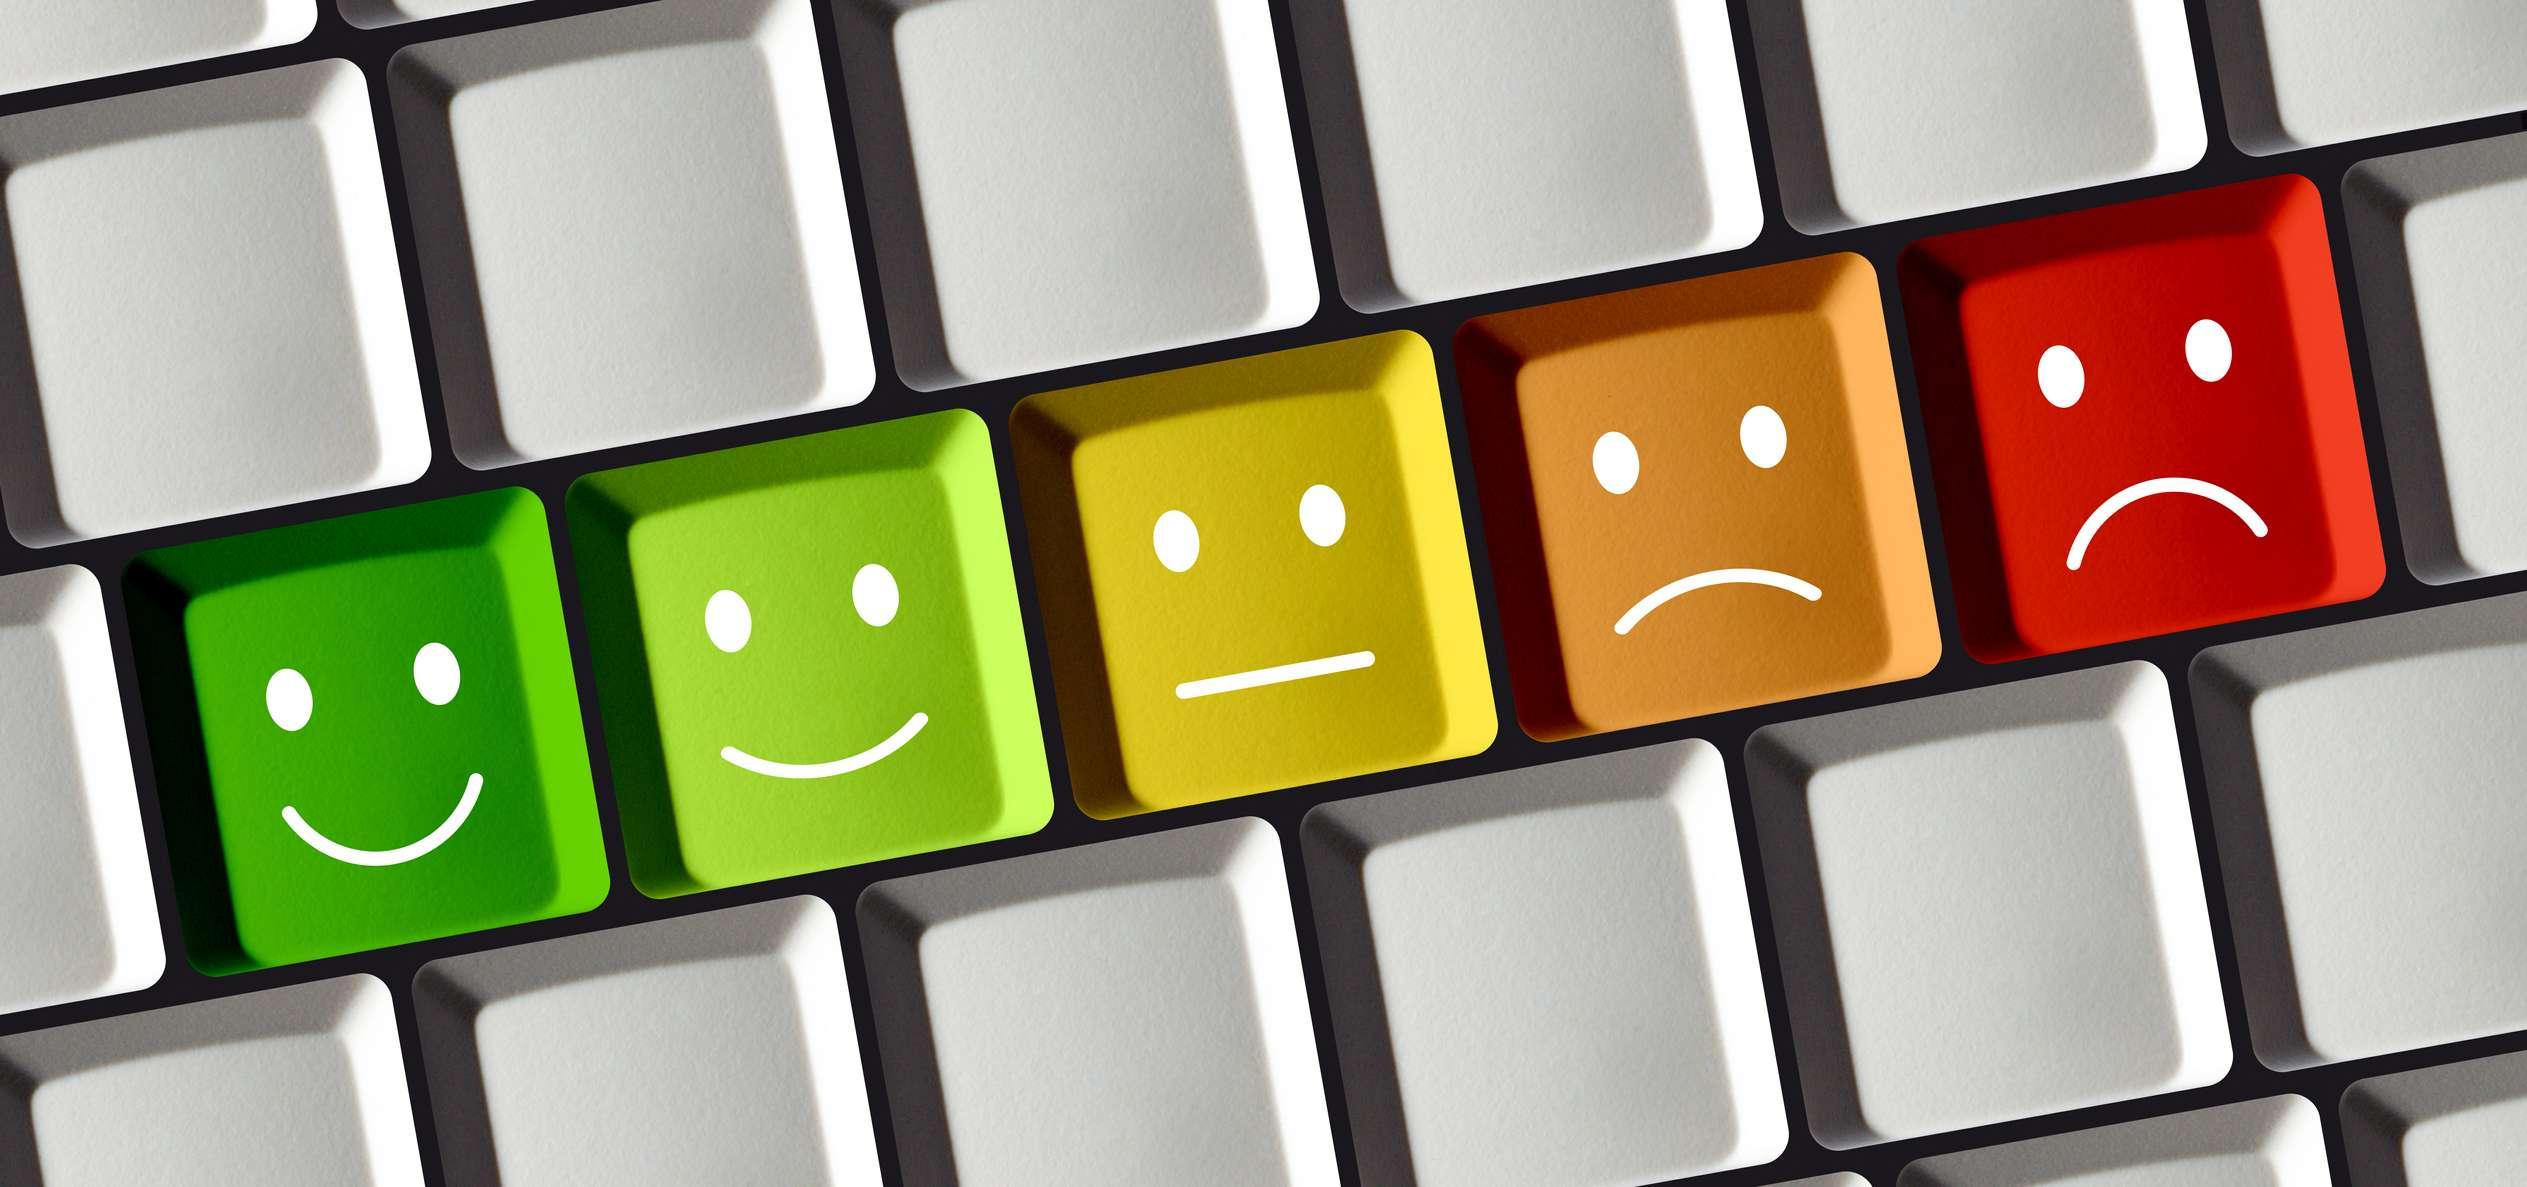 Computertastatur mit farbigen Tasten, die positive und negative Emotionen von rot über gelb bis grün zeigen